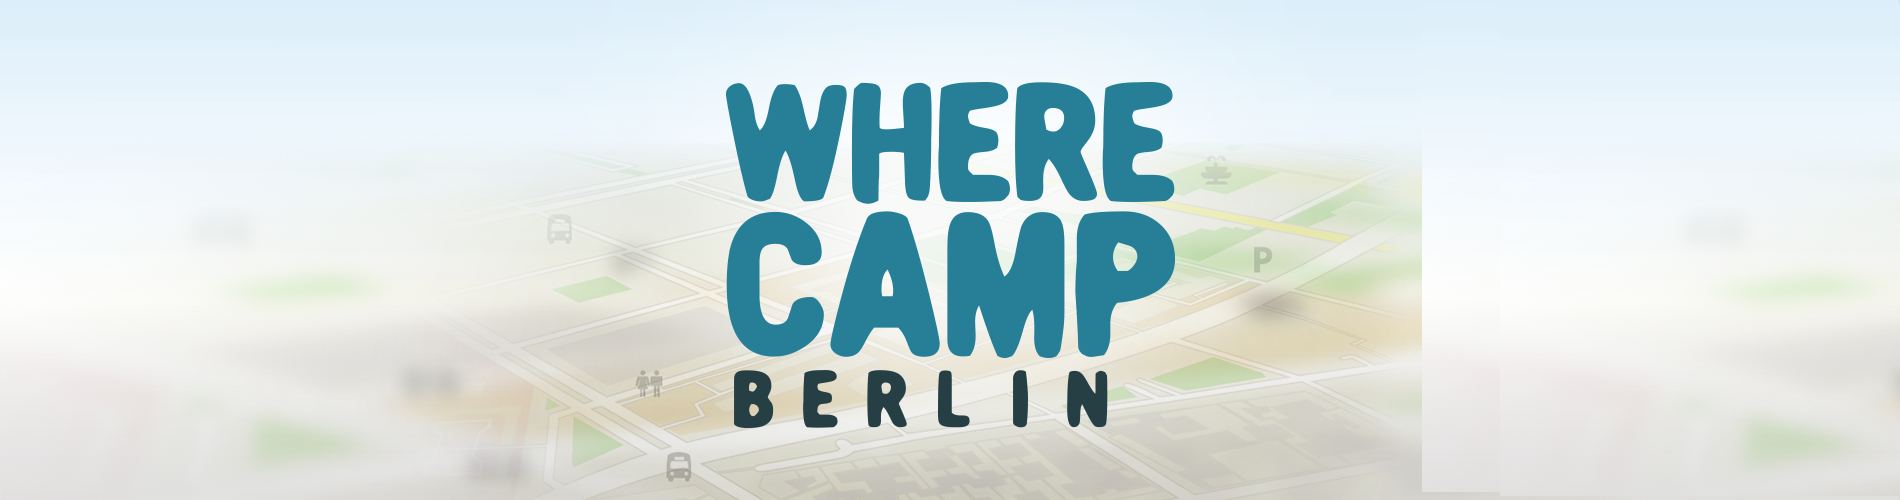 WhereCamp Berlin